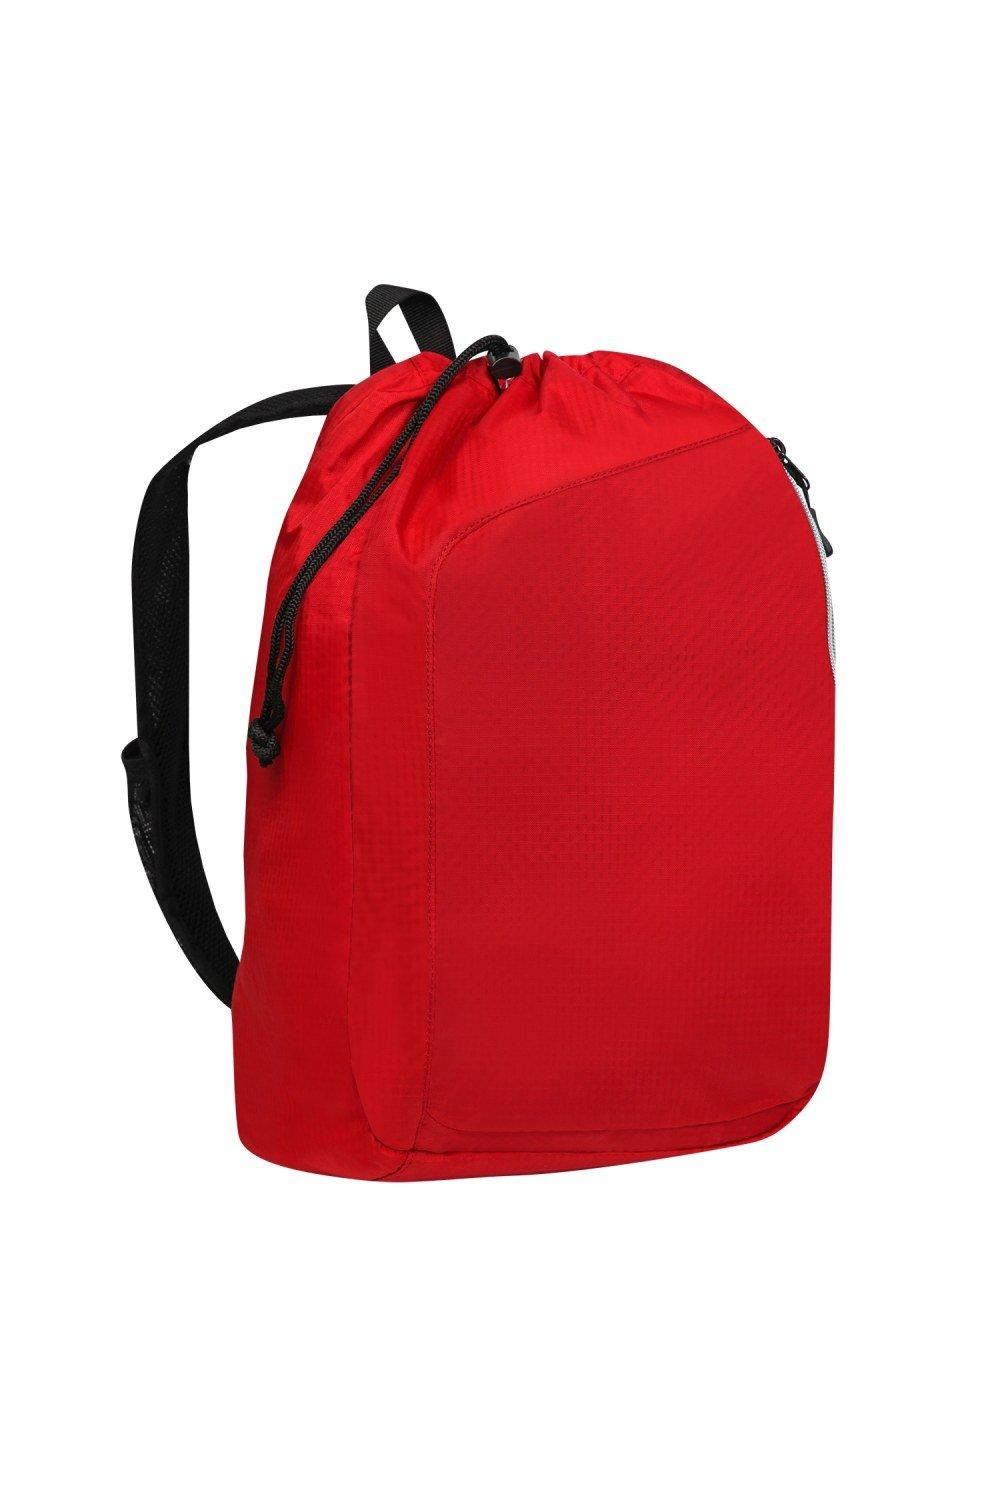 Рюкзак Endurance Sonic с одним ремнем (2 шт.) Ogio, красный врезка в куб под кламп 2 дюйма